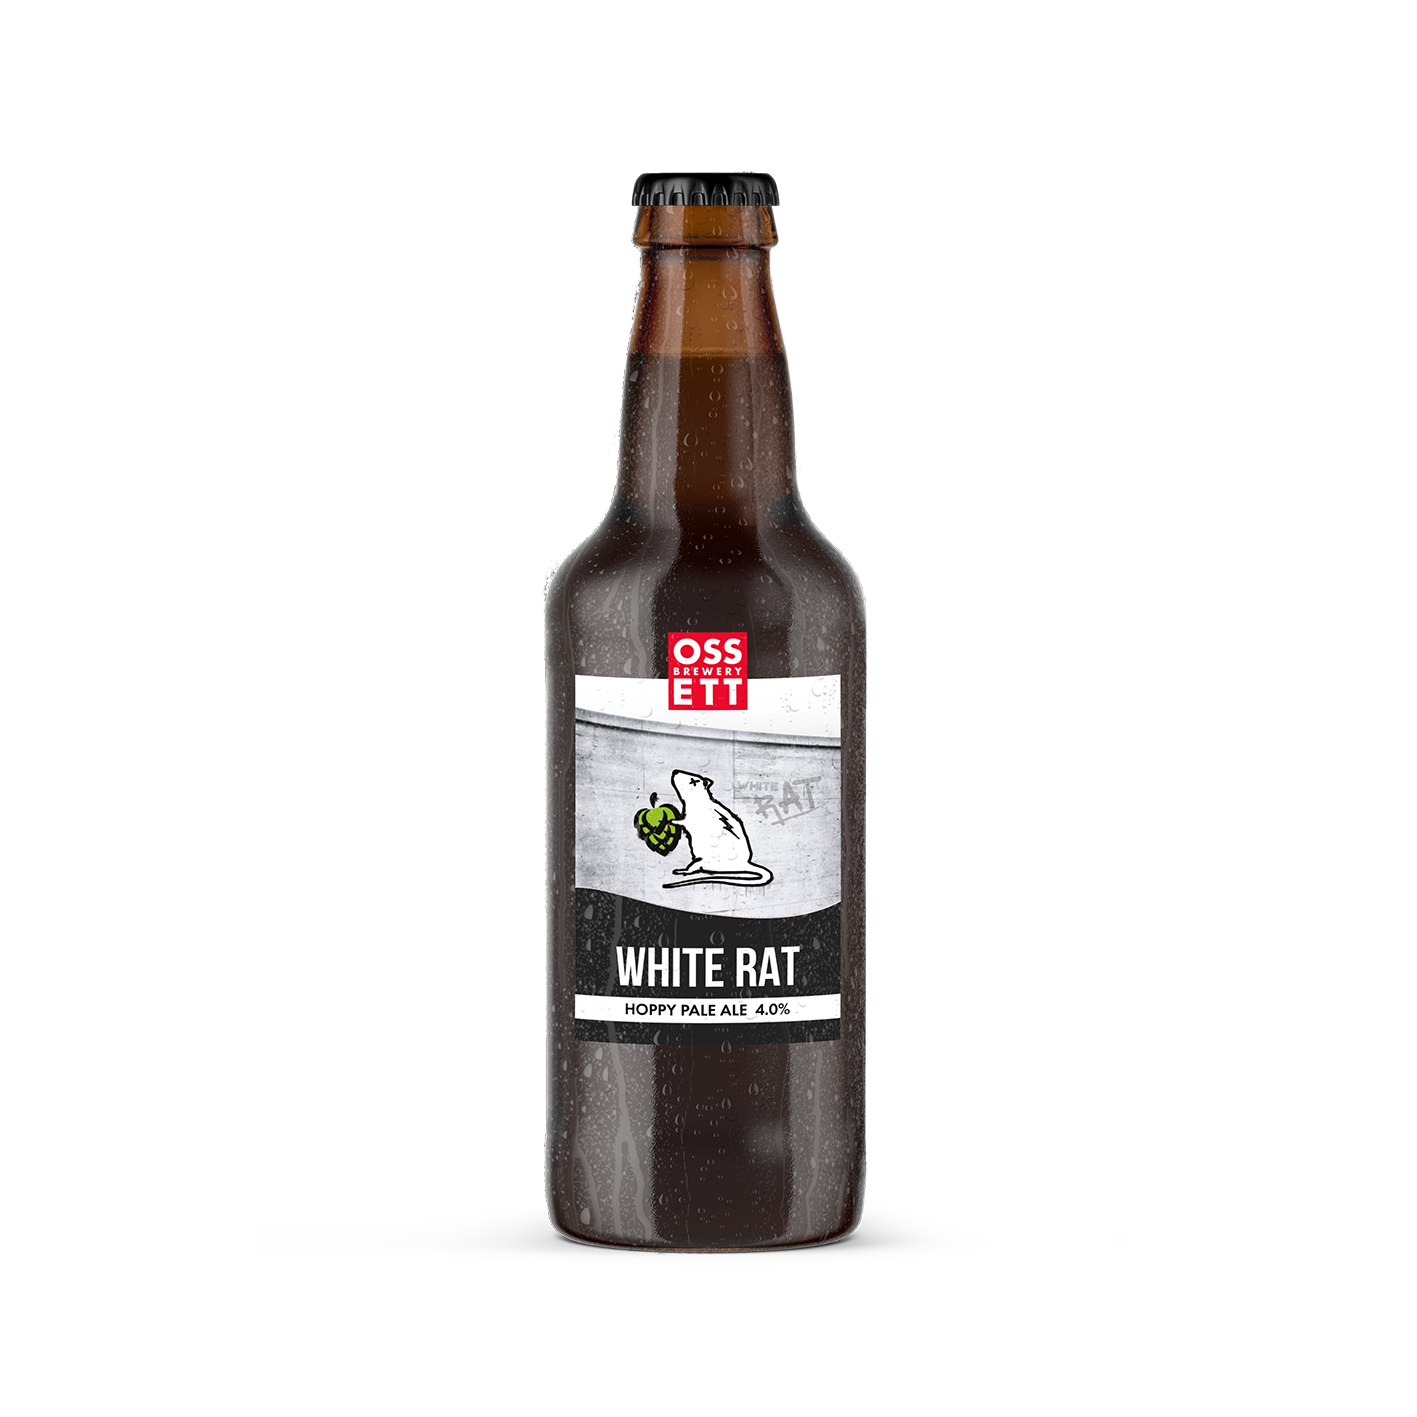 White Rat – Ossett Brewery